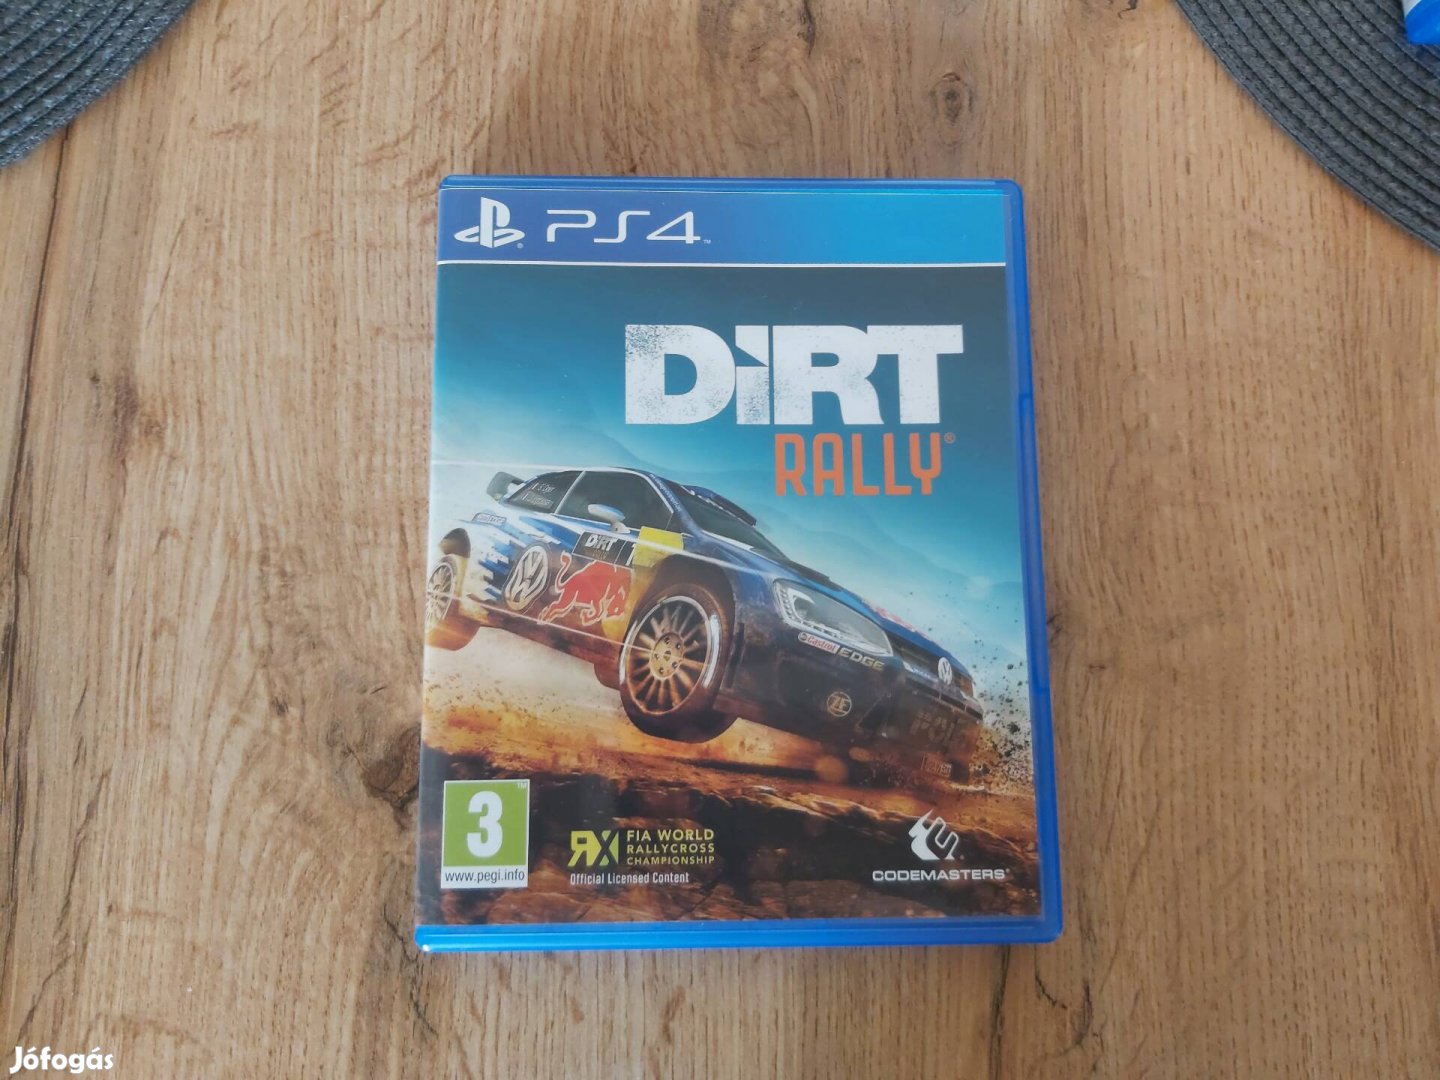 Playstation 4 Ps4 Dirt Rally Játéklemez 